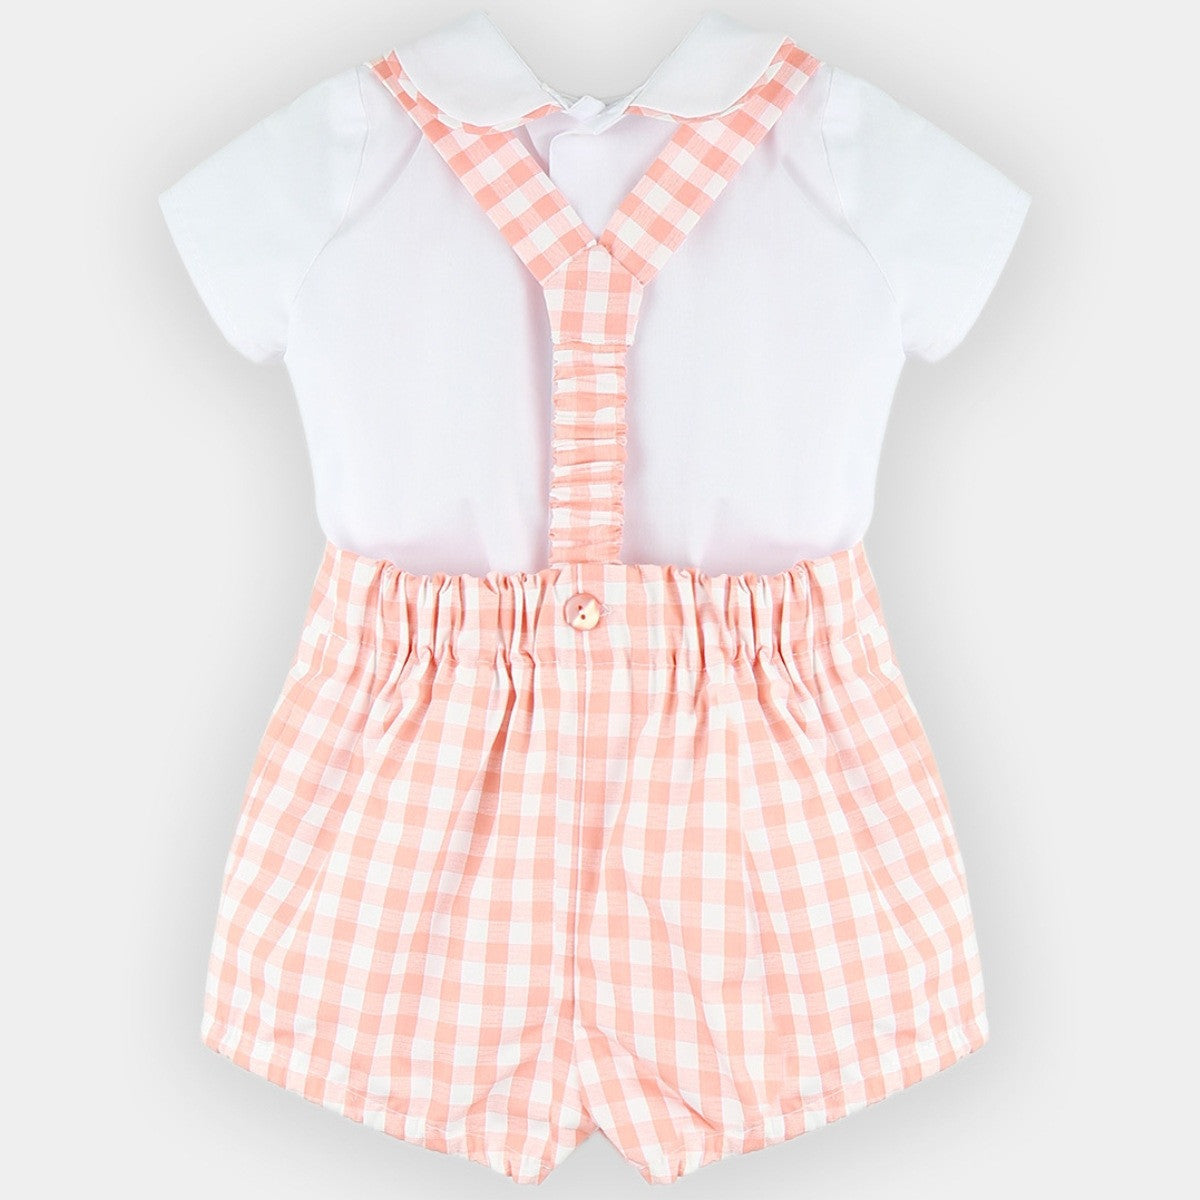 Babyferr peach gingham shorts & shirt set